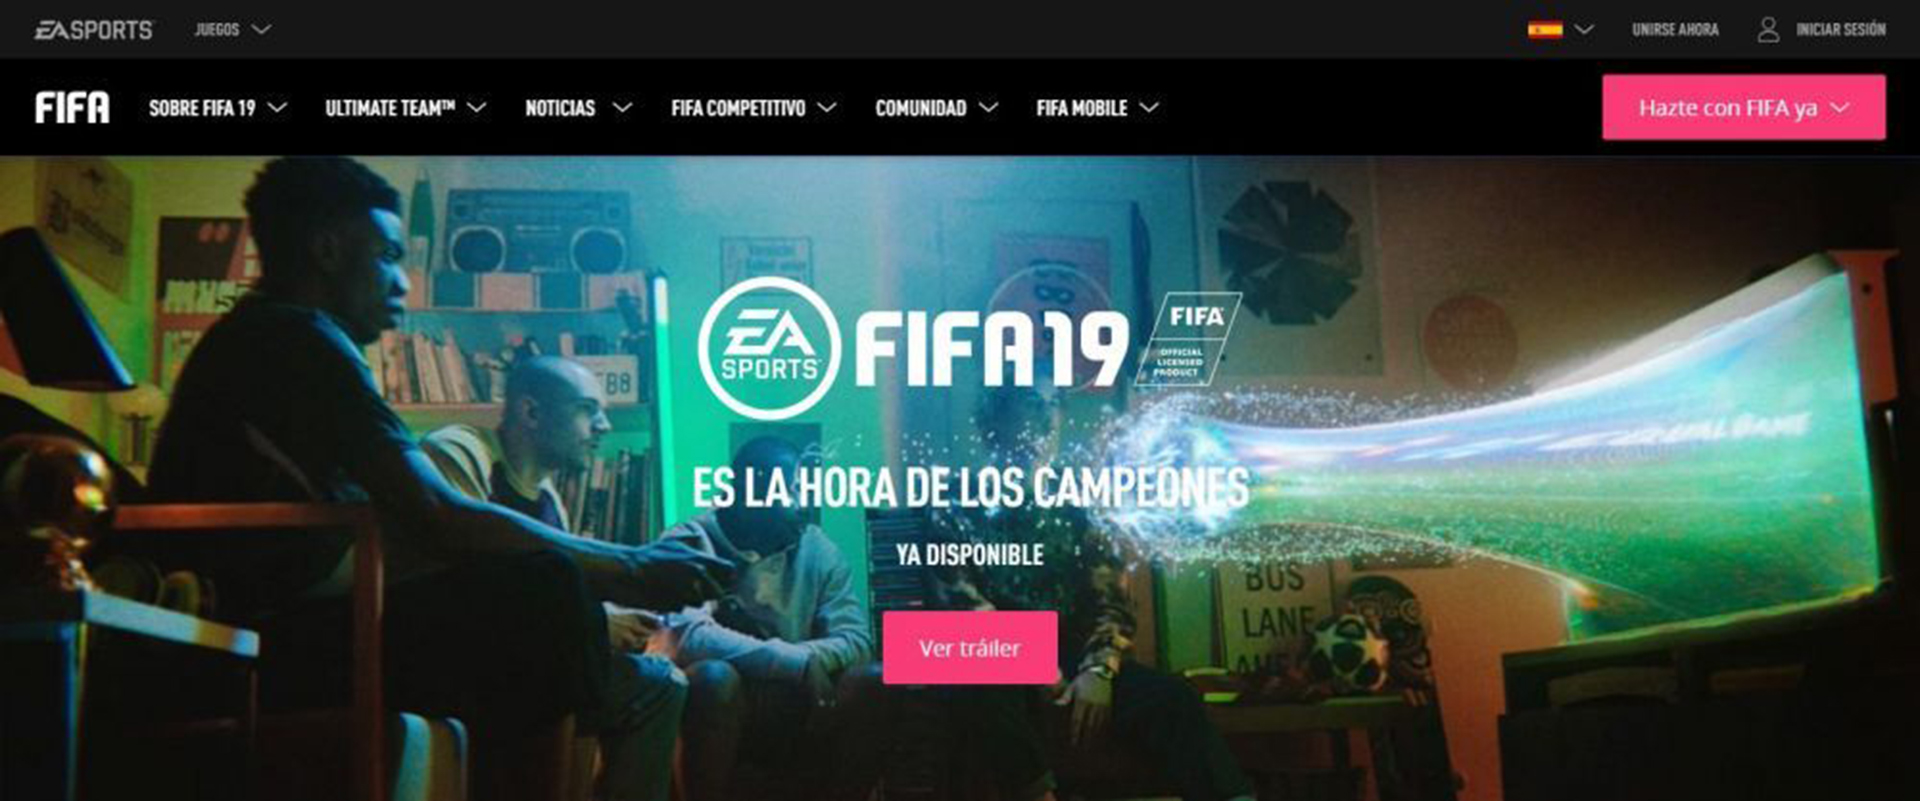 Obraz referencyjny EA Sports FIFA 19 (zdjęcie: plik/EA Sports)